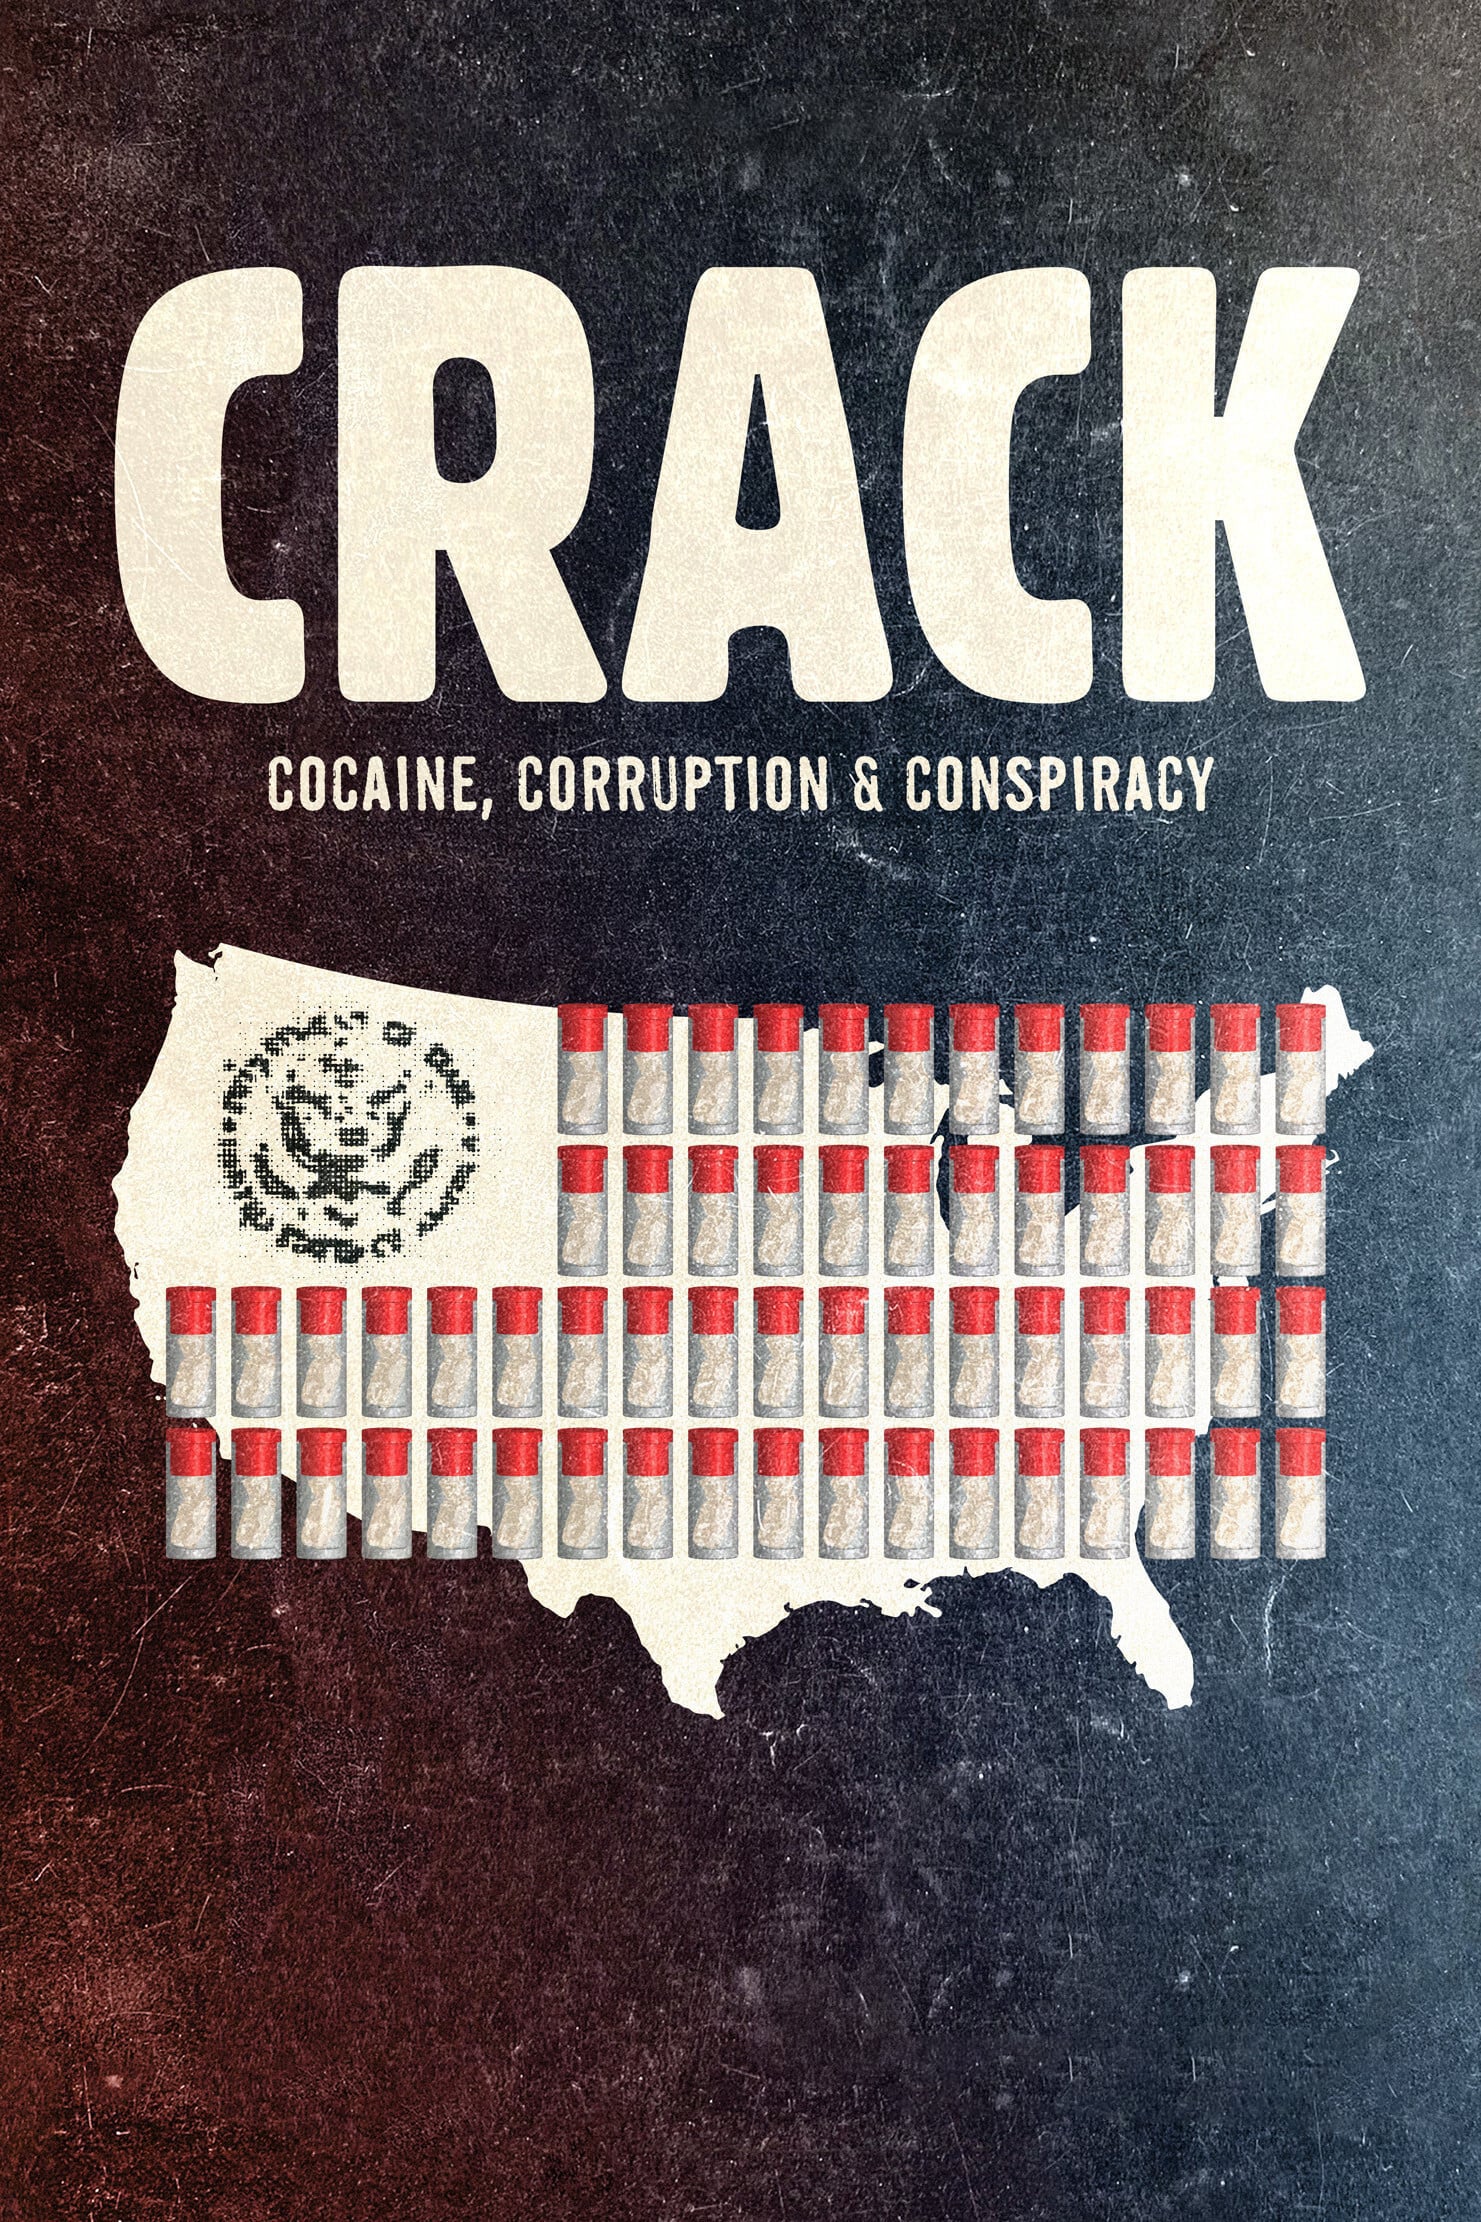 Caratula de Crack: Cocaine, Corruption & Conspiracy (Crack: cocaína, corrupción y conspiración) 